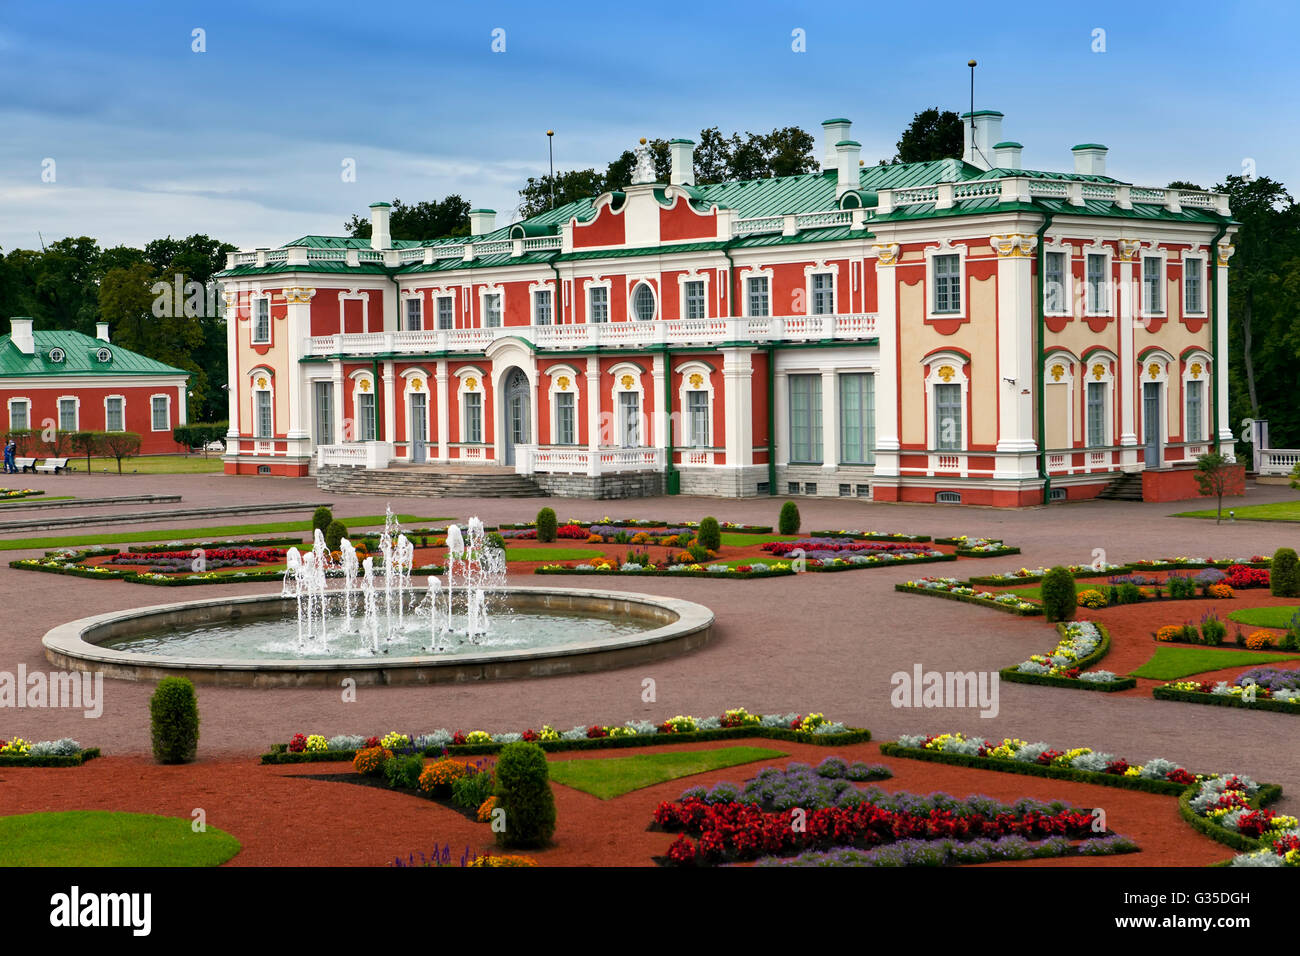 Kadriorg Palace, at Kadriorg Park, in Tallinn, Estonia Stock Photo